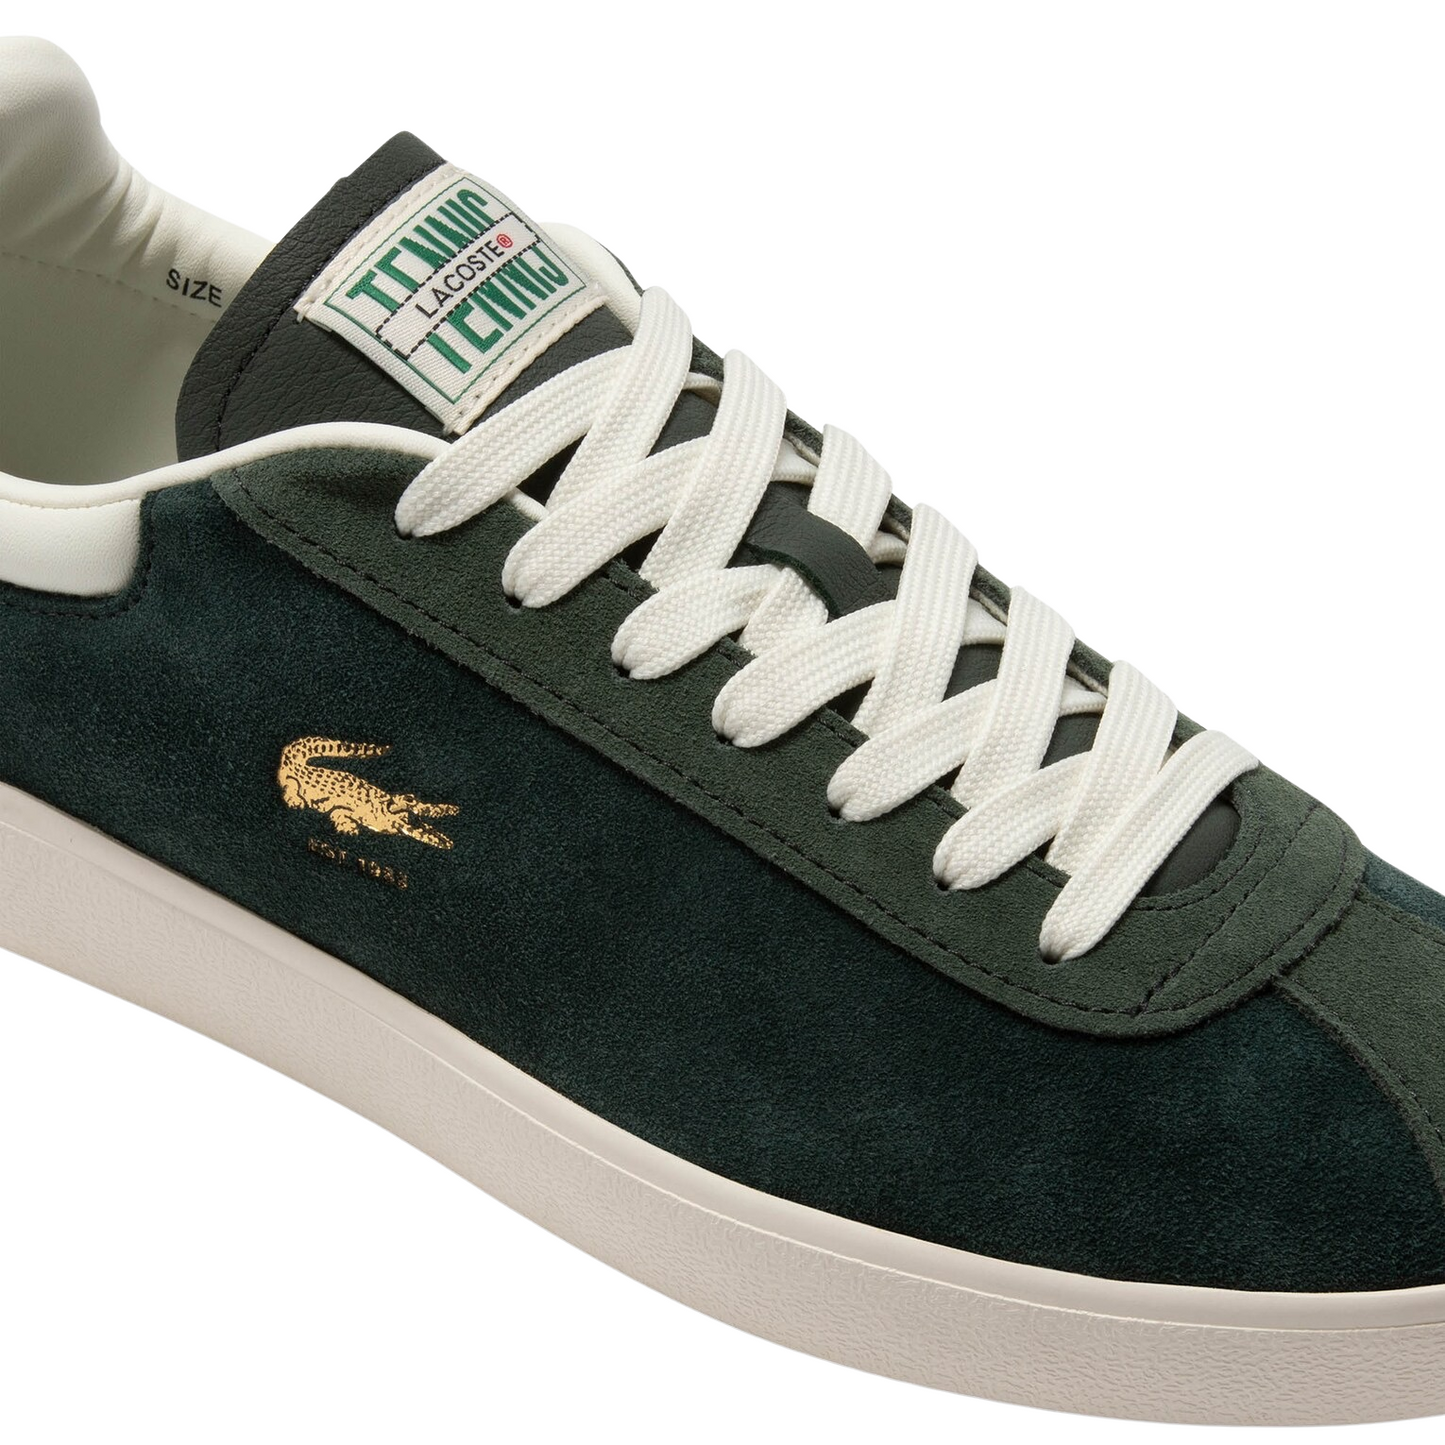 Men's Lacoste Baseshot Dark Green White Sneakers